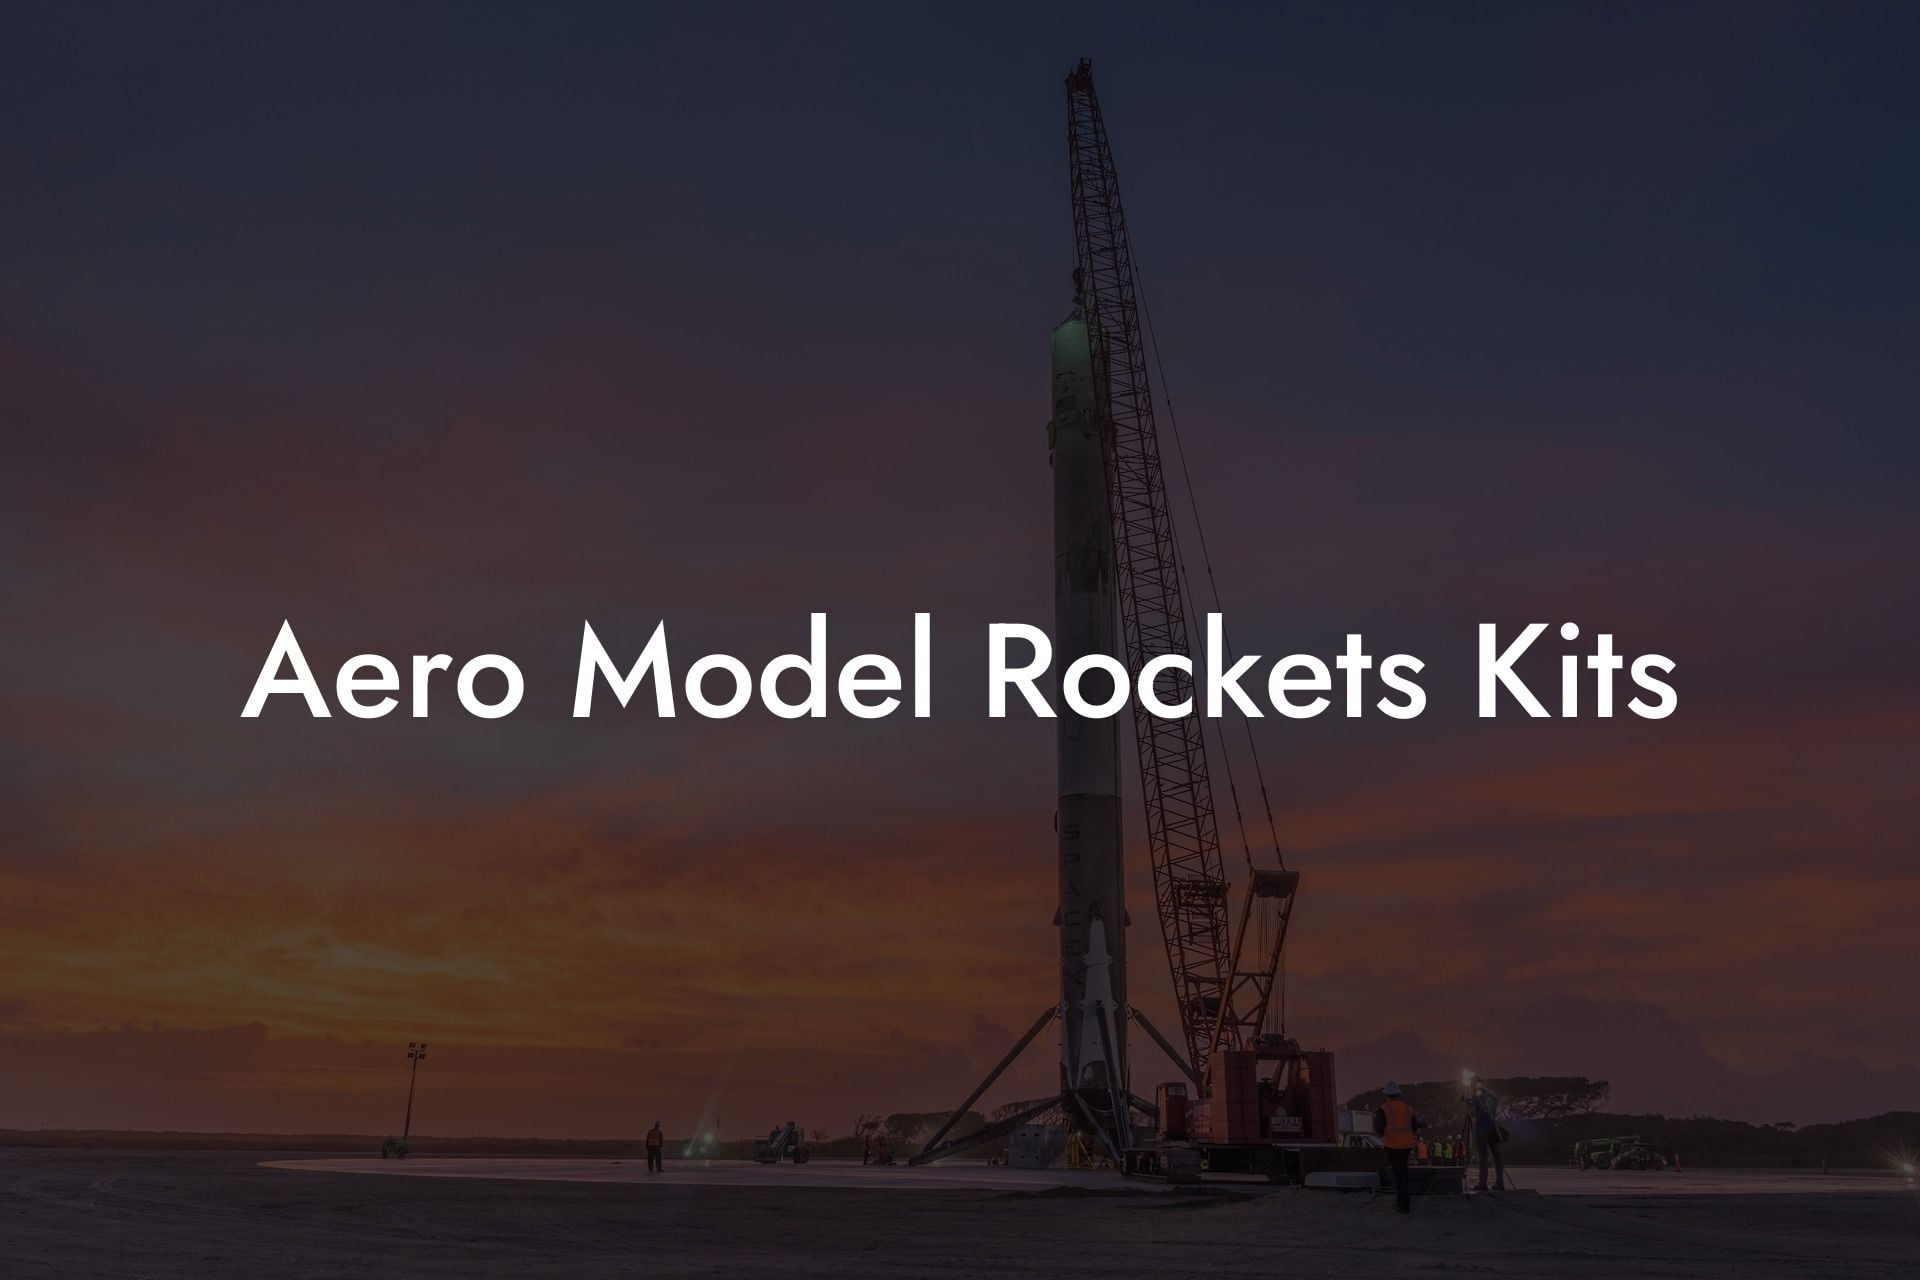 Aero Model Rockets Kits